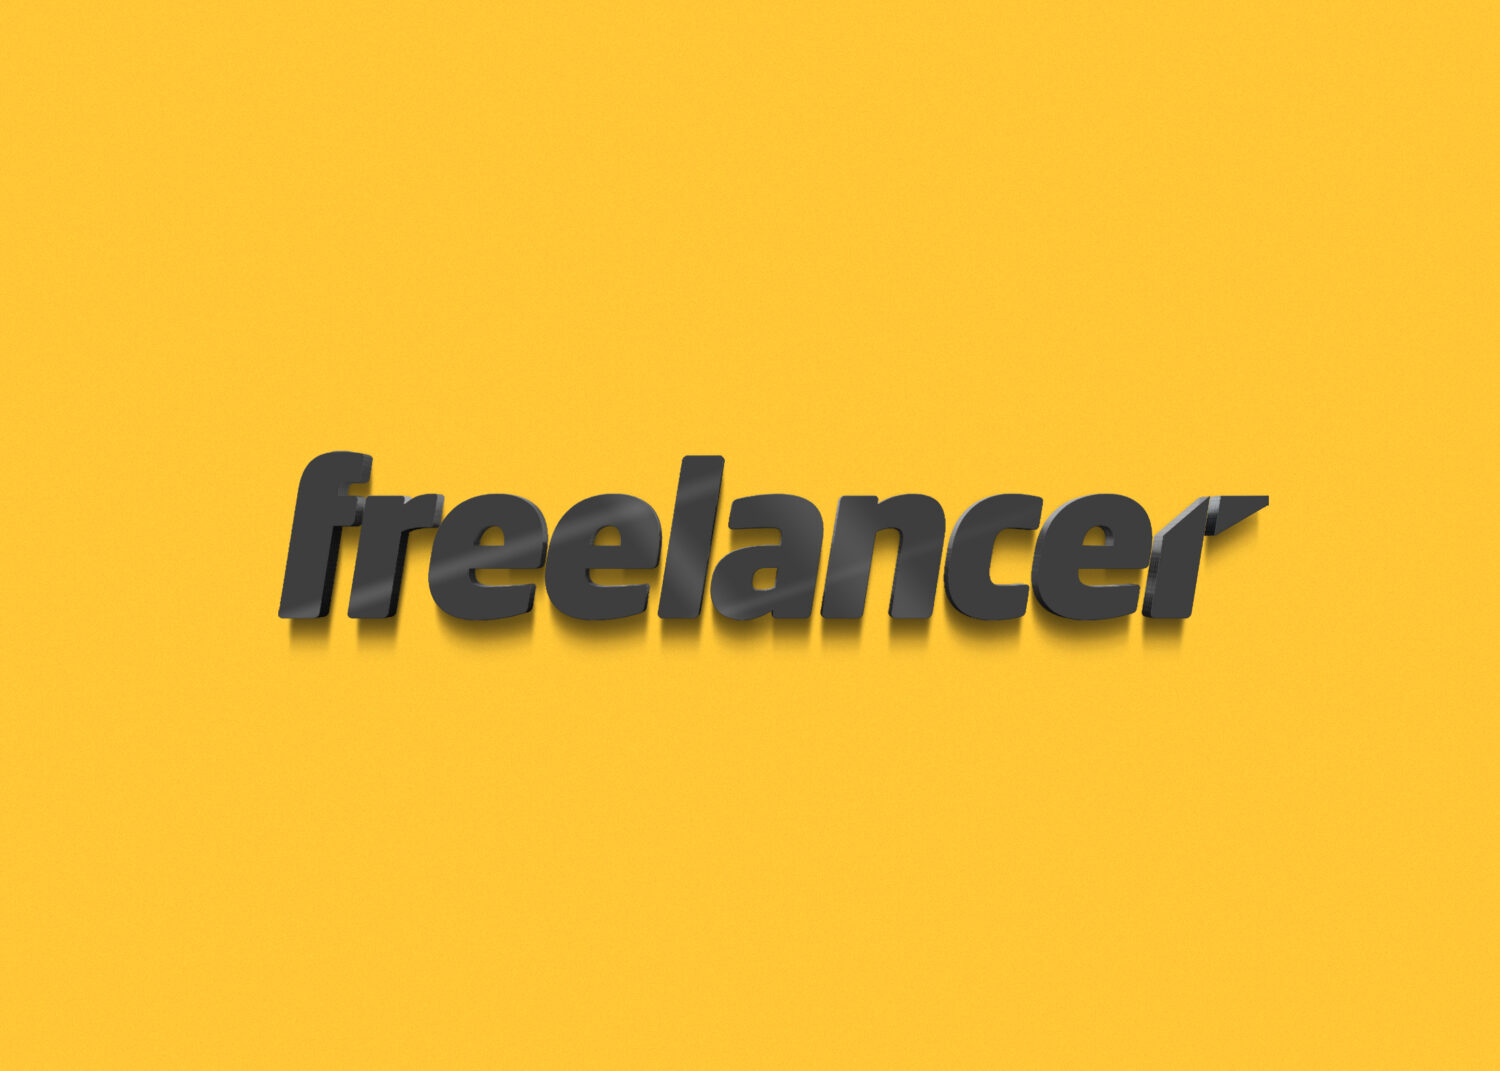 freelancer Modern 3D logo mock-up